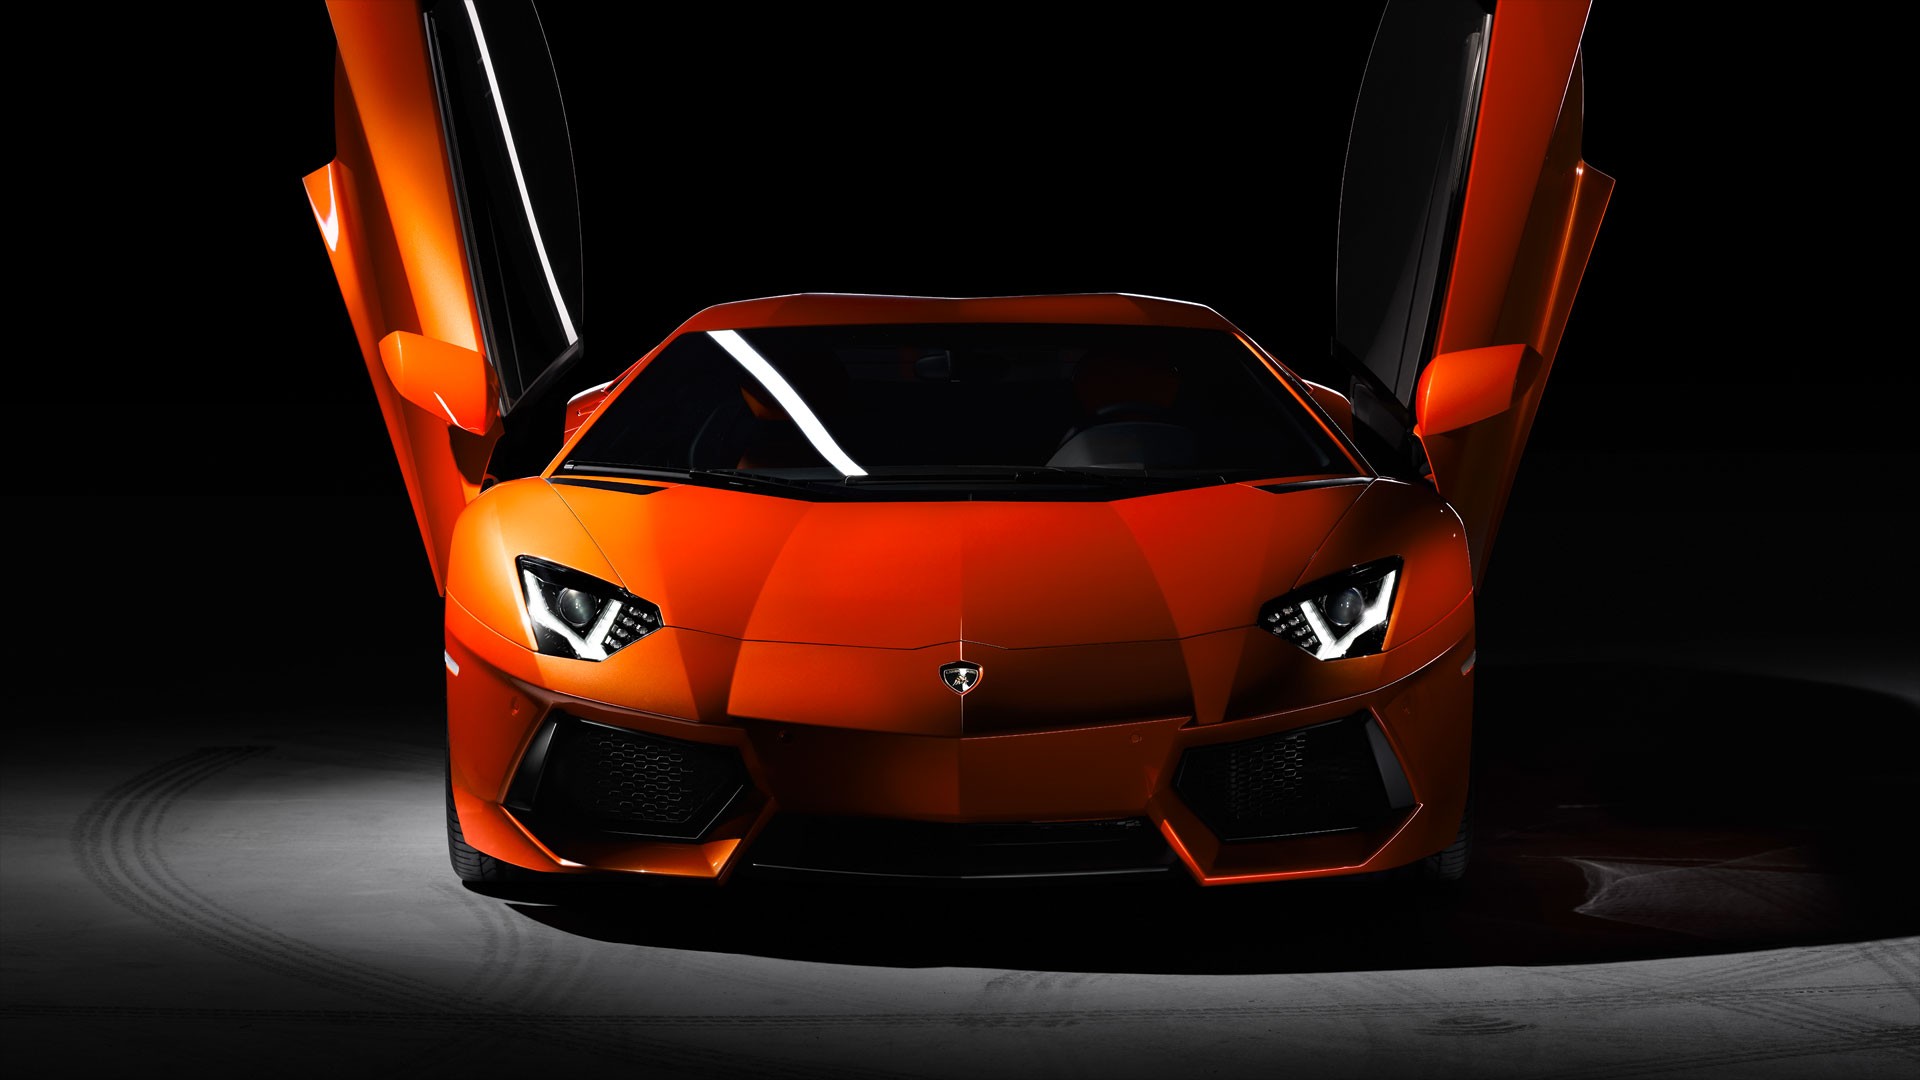 Lamborghini Aventador Wallpapers Free Download 